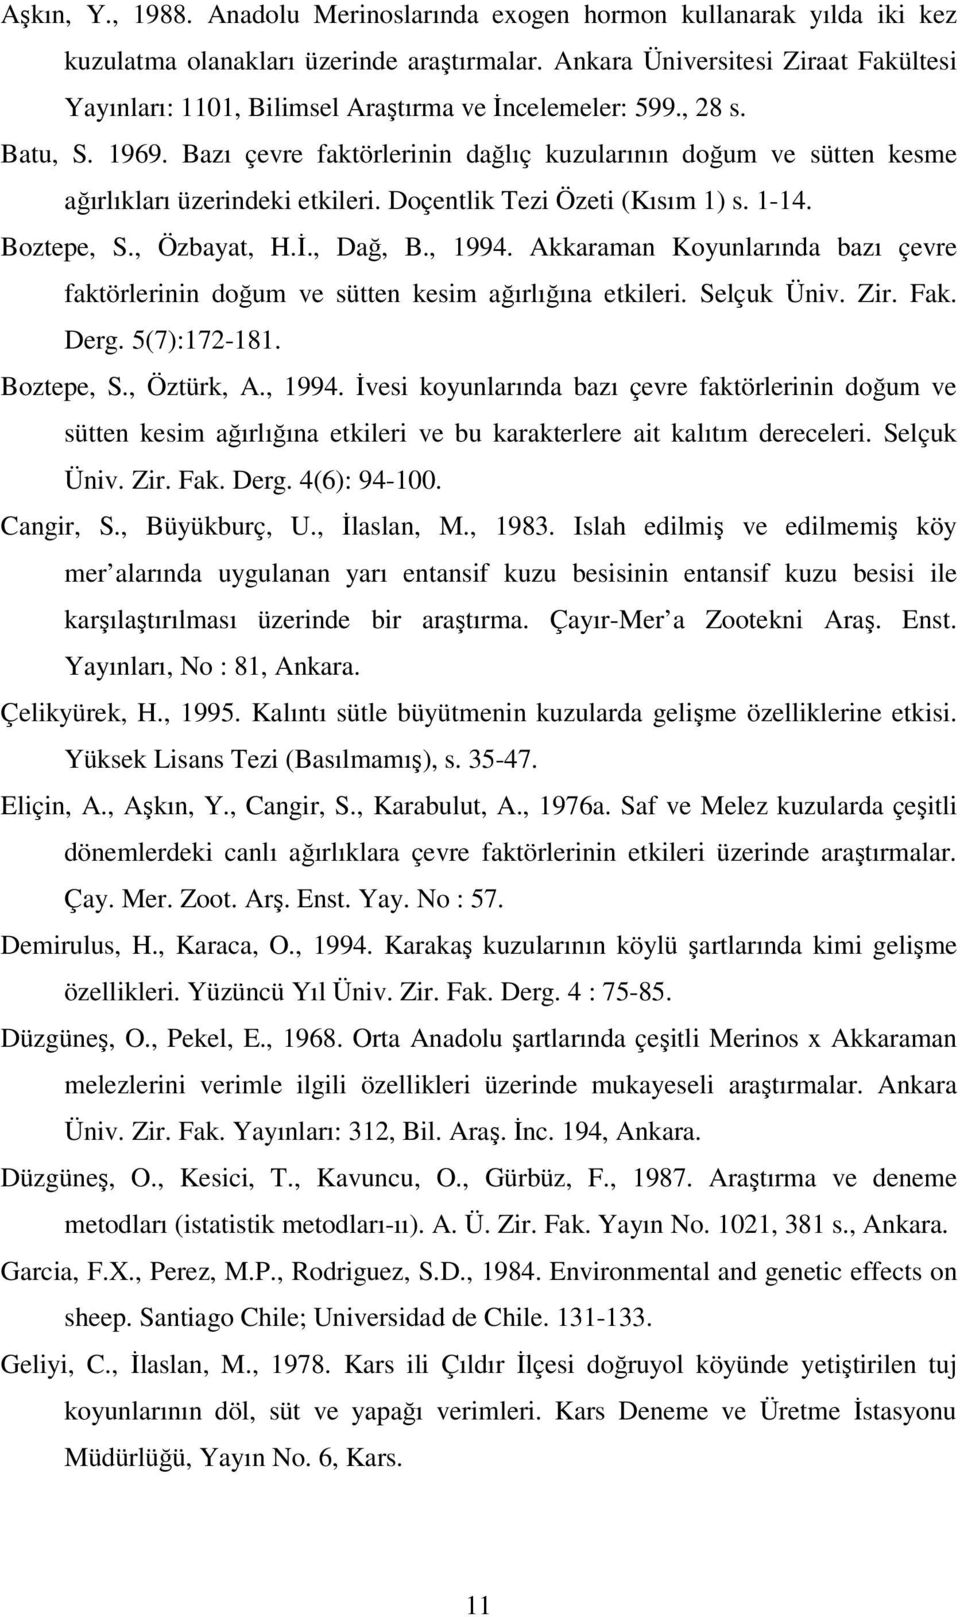 Bazı çevre faktörlerinin dağlıç kuzularının doğum ve sütten kesme ağırlıkları üzerindeki etkileri. Doçentlik Tezi Özeti (Kısım 1) s. 1-14. Boztepe, S., Özbayat, H.İ., Dağ, B., 1994.